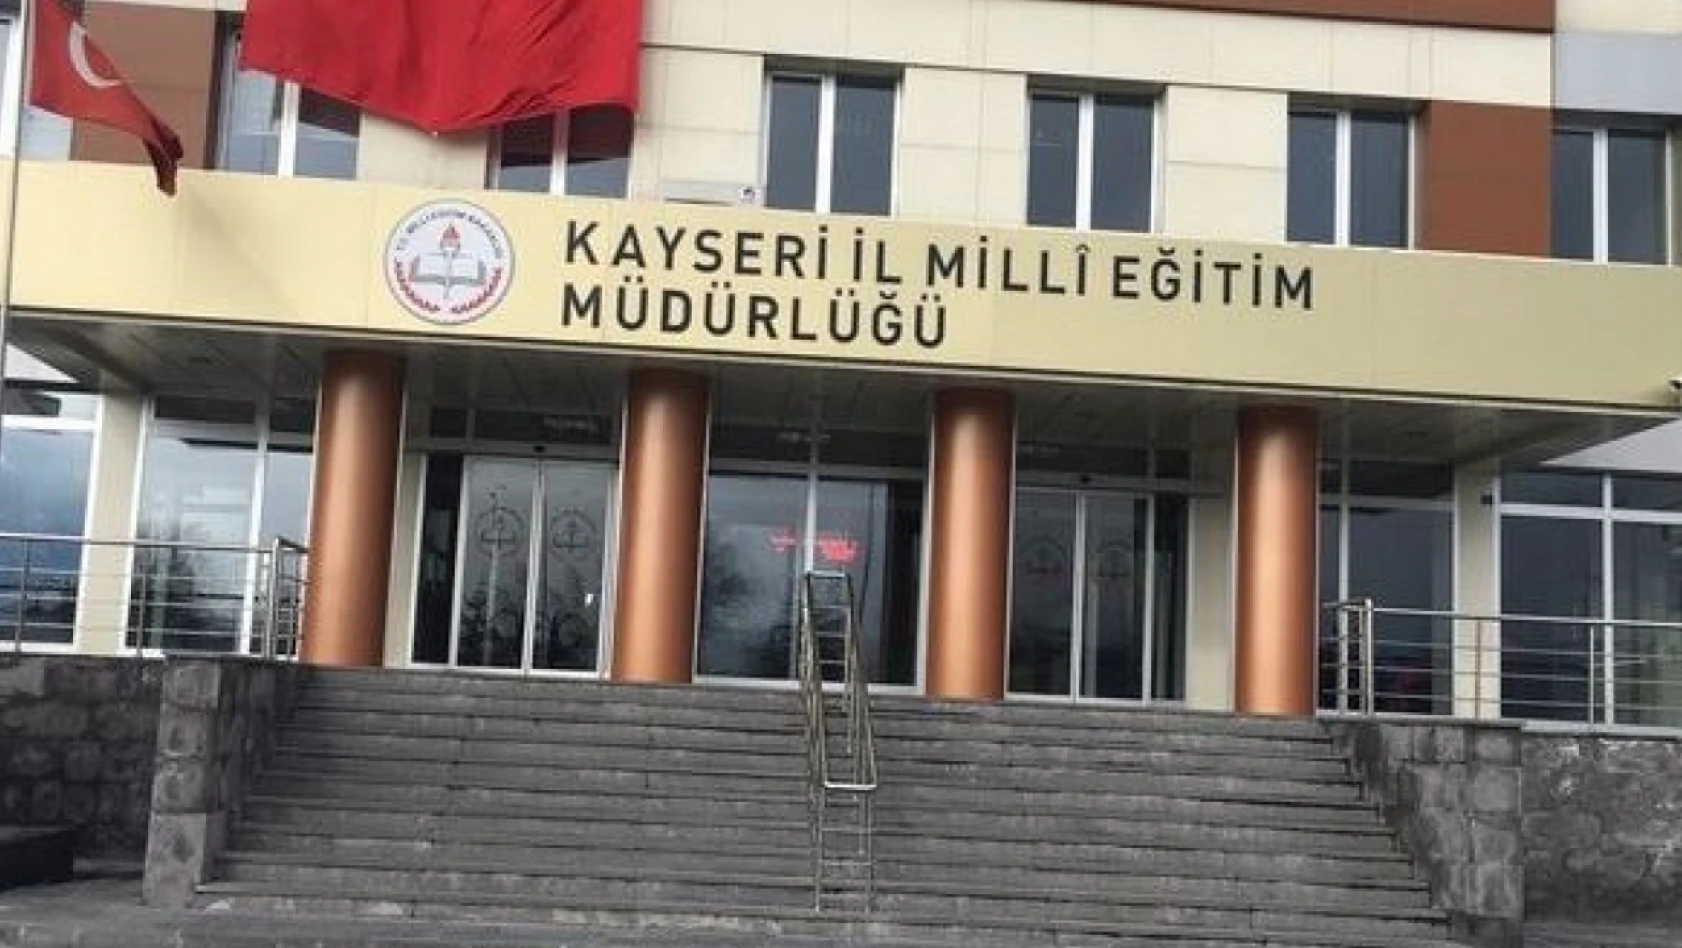 10 ilde Milli Eğitim Müdürü değişti – Kayseri'de de değişti mi?